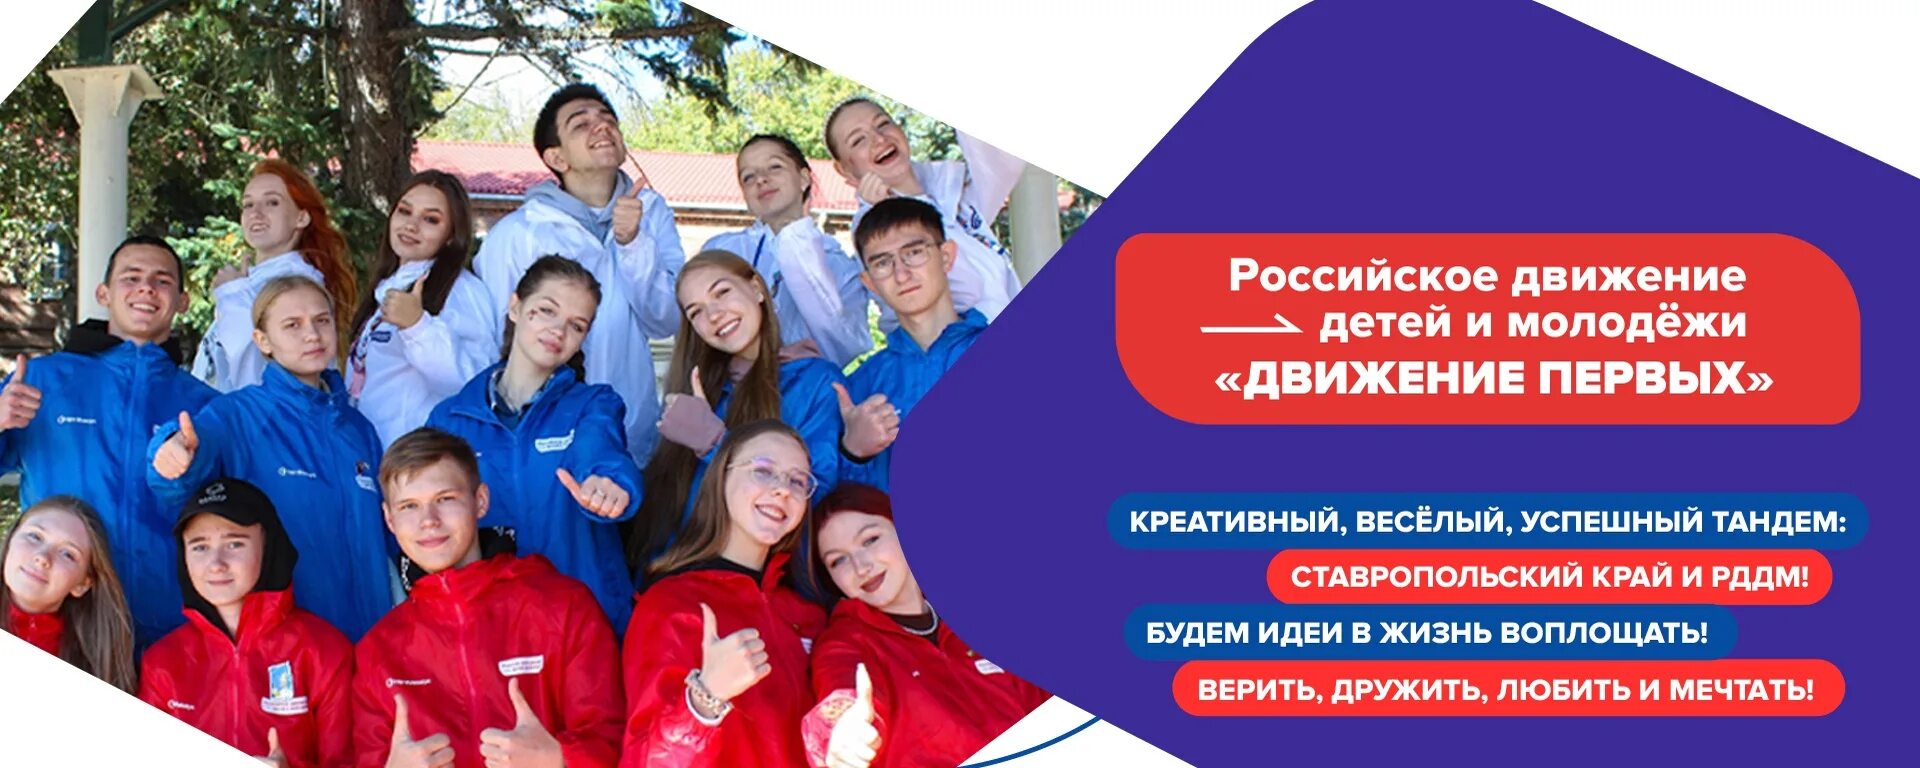 Российское движение детей и молодежи. Детские и молодежные движения. Детское и молодежное движение это. Рддм- российское движение детей и молодежи «движение первых».